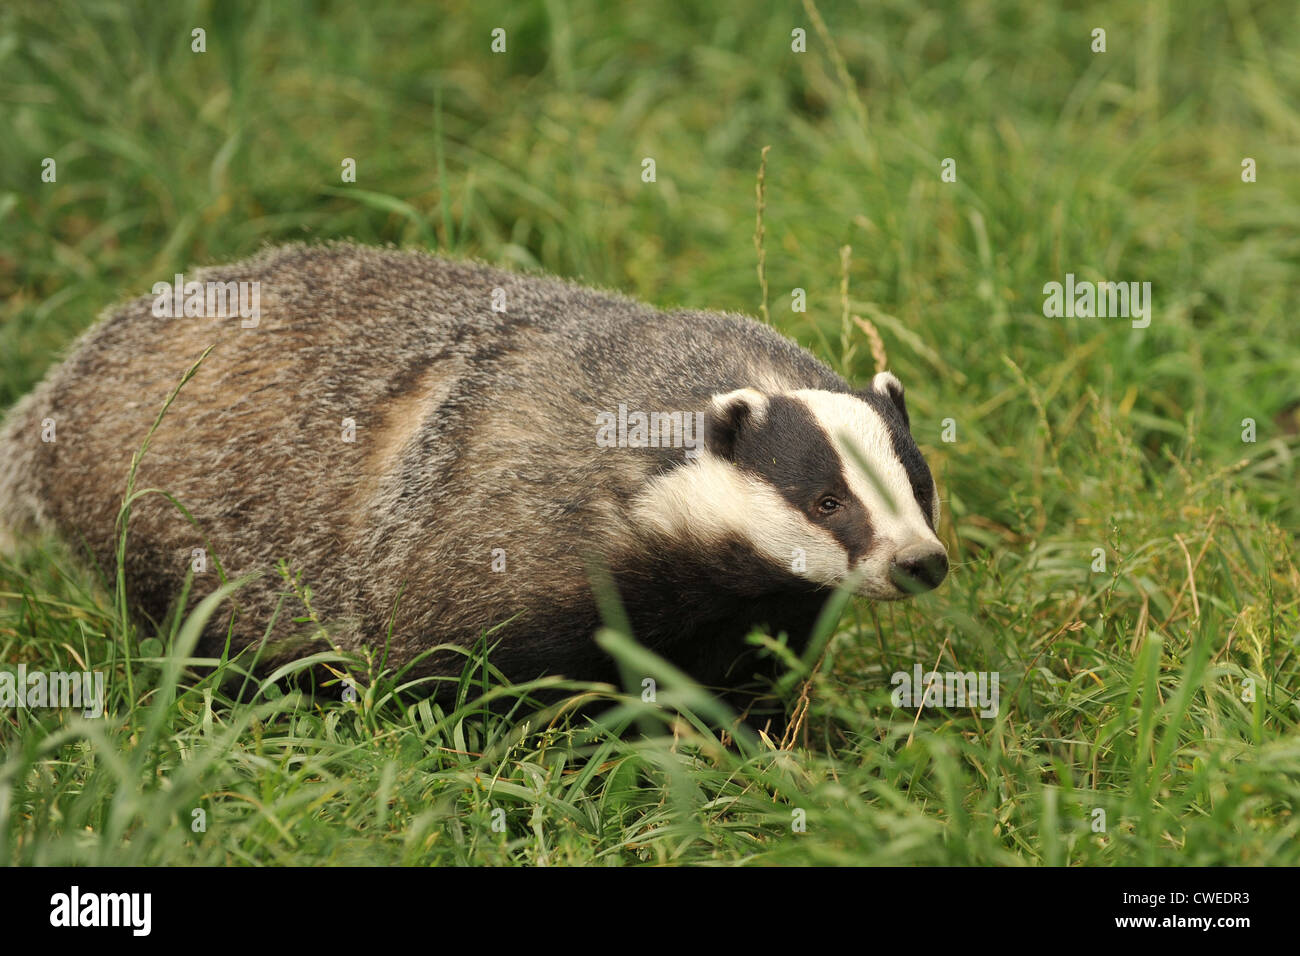 eurpoean badger in grassy field Stock Photo